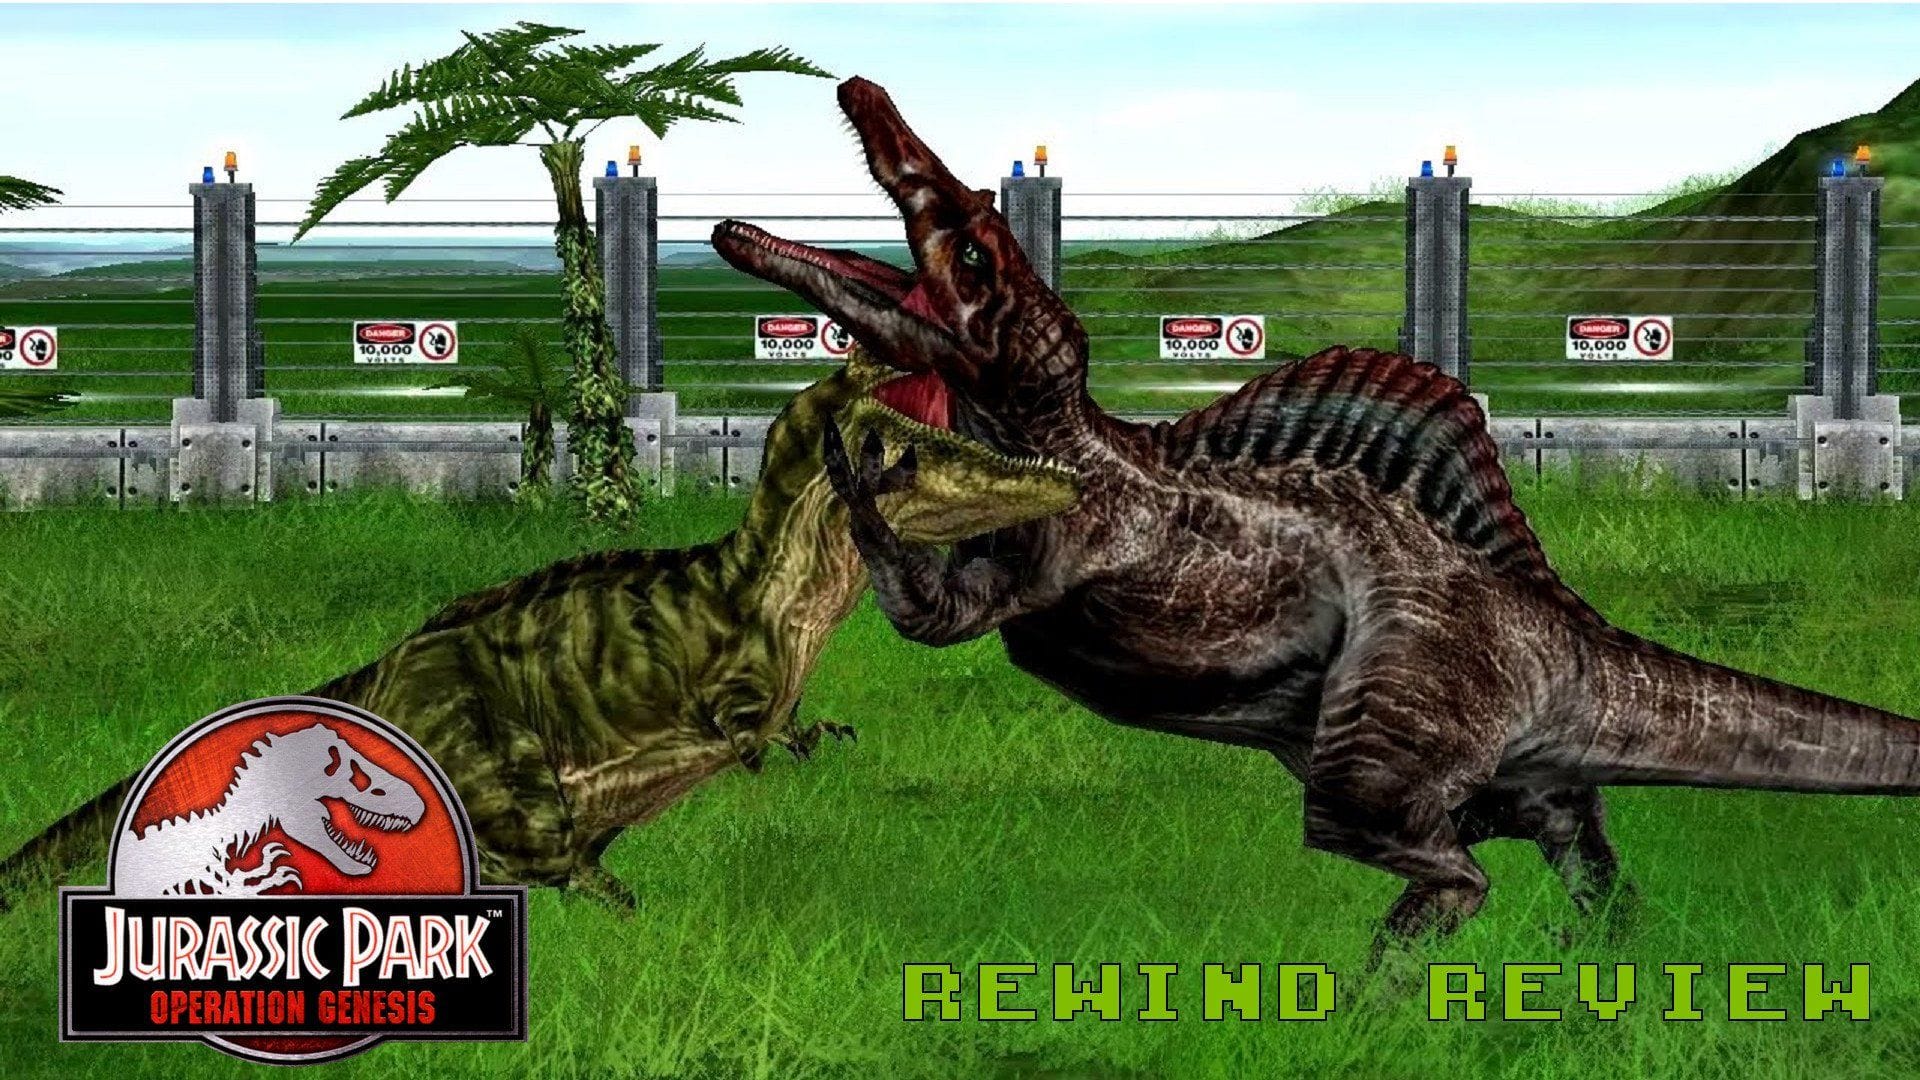 Jurassic Park: Operation Genesis - PlayStation 2